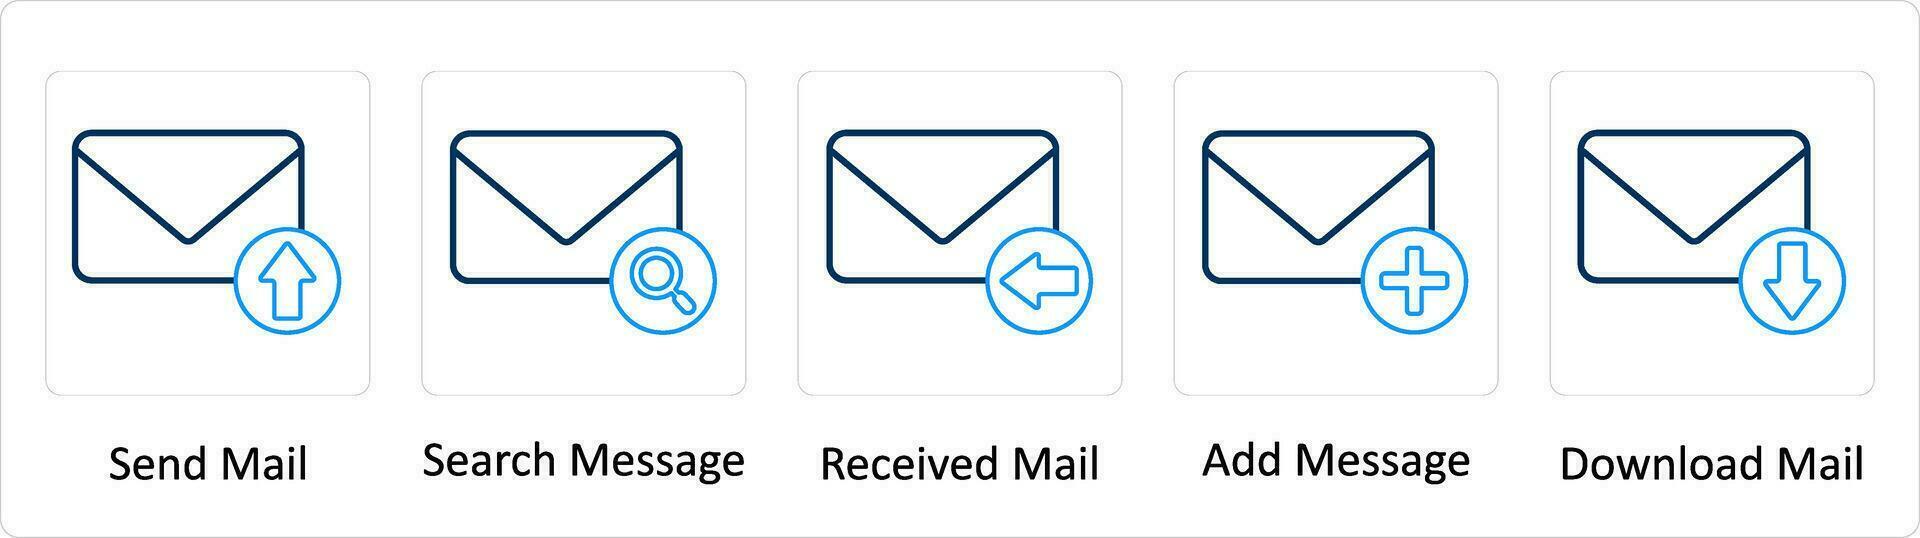 uma conjunto do 5 extra ícones Como mandar correspondência, procurar mensagem, recebido enviar vetor